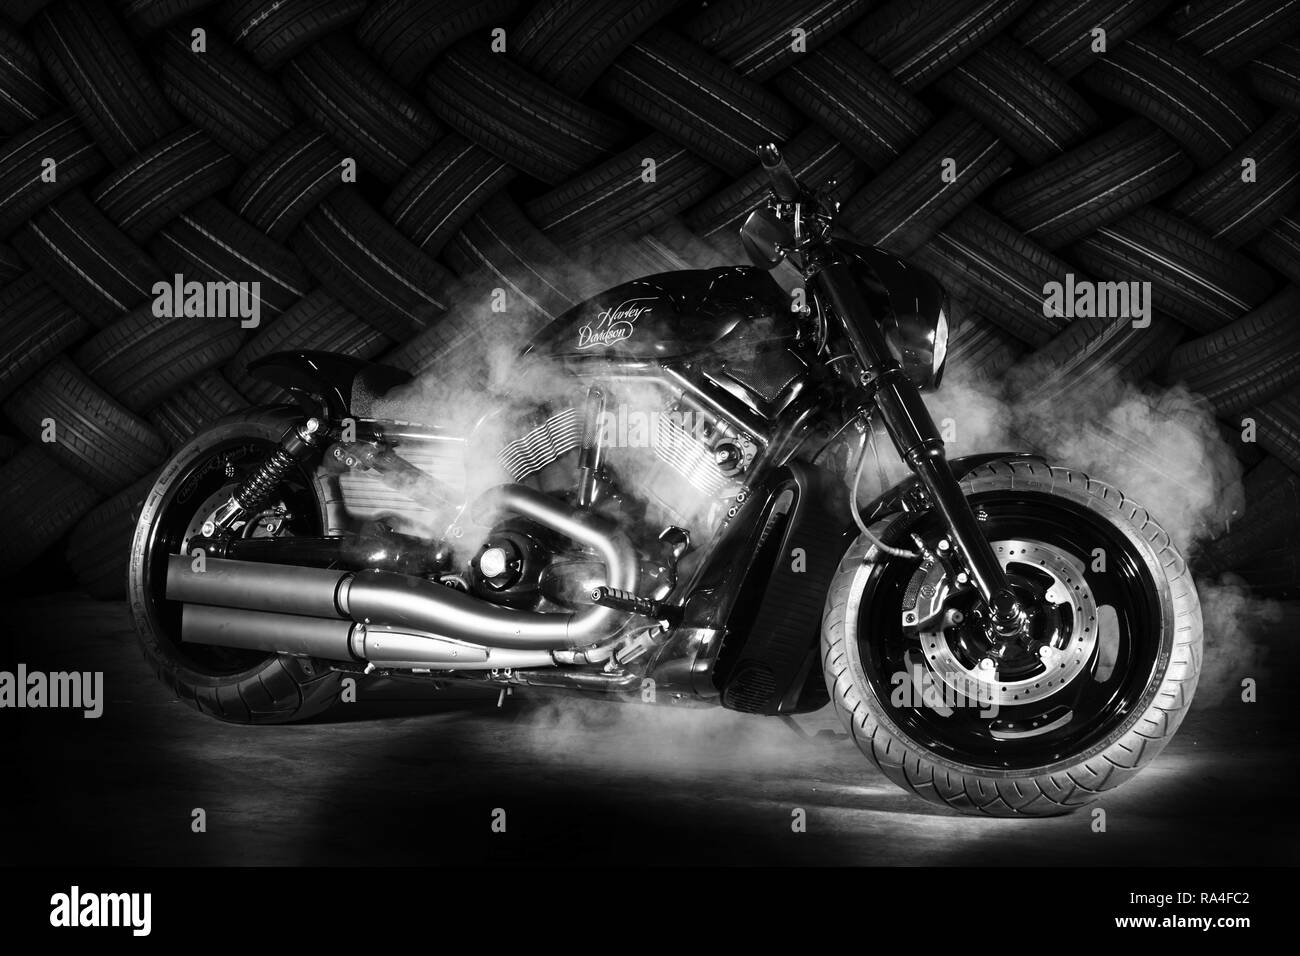 Moto, Harley Davidson, monochrome, Allemagne Banque D'Images